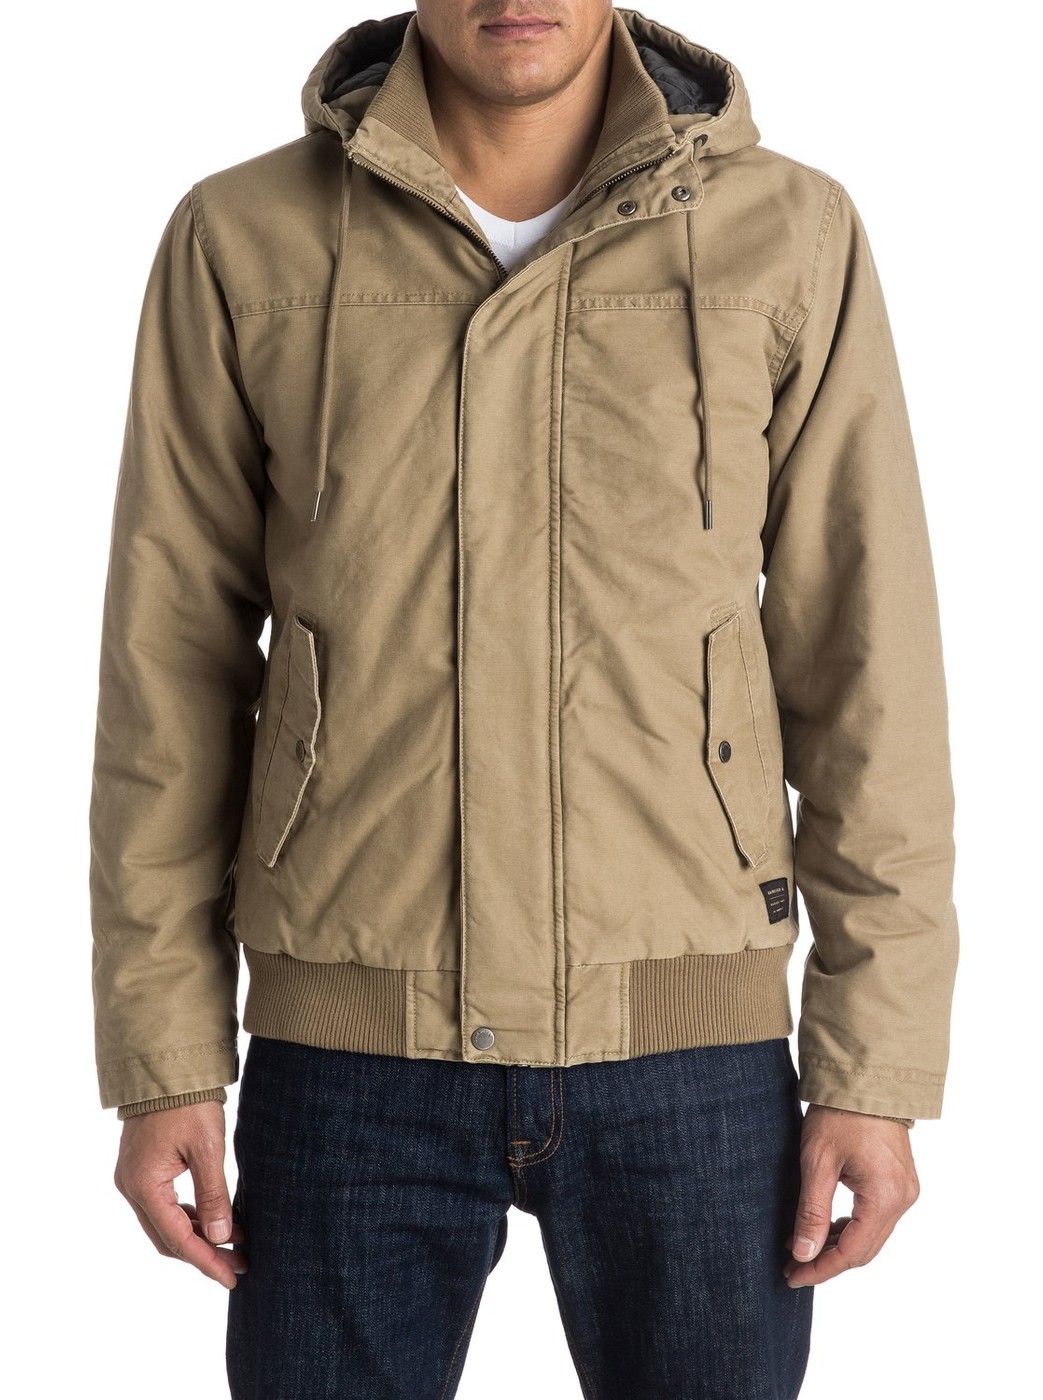 Куртка демисезонная - мужская куртка Quiksilver, XL, XL